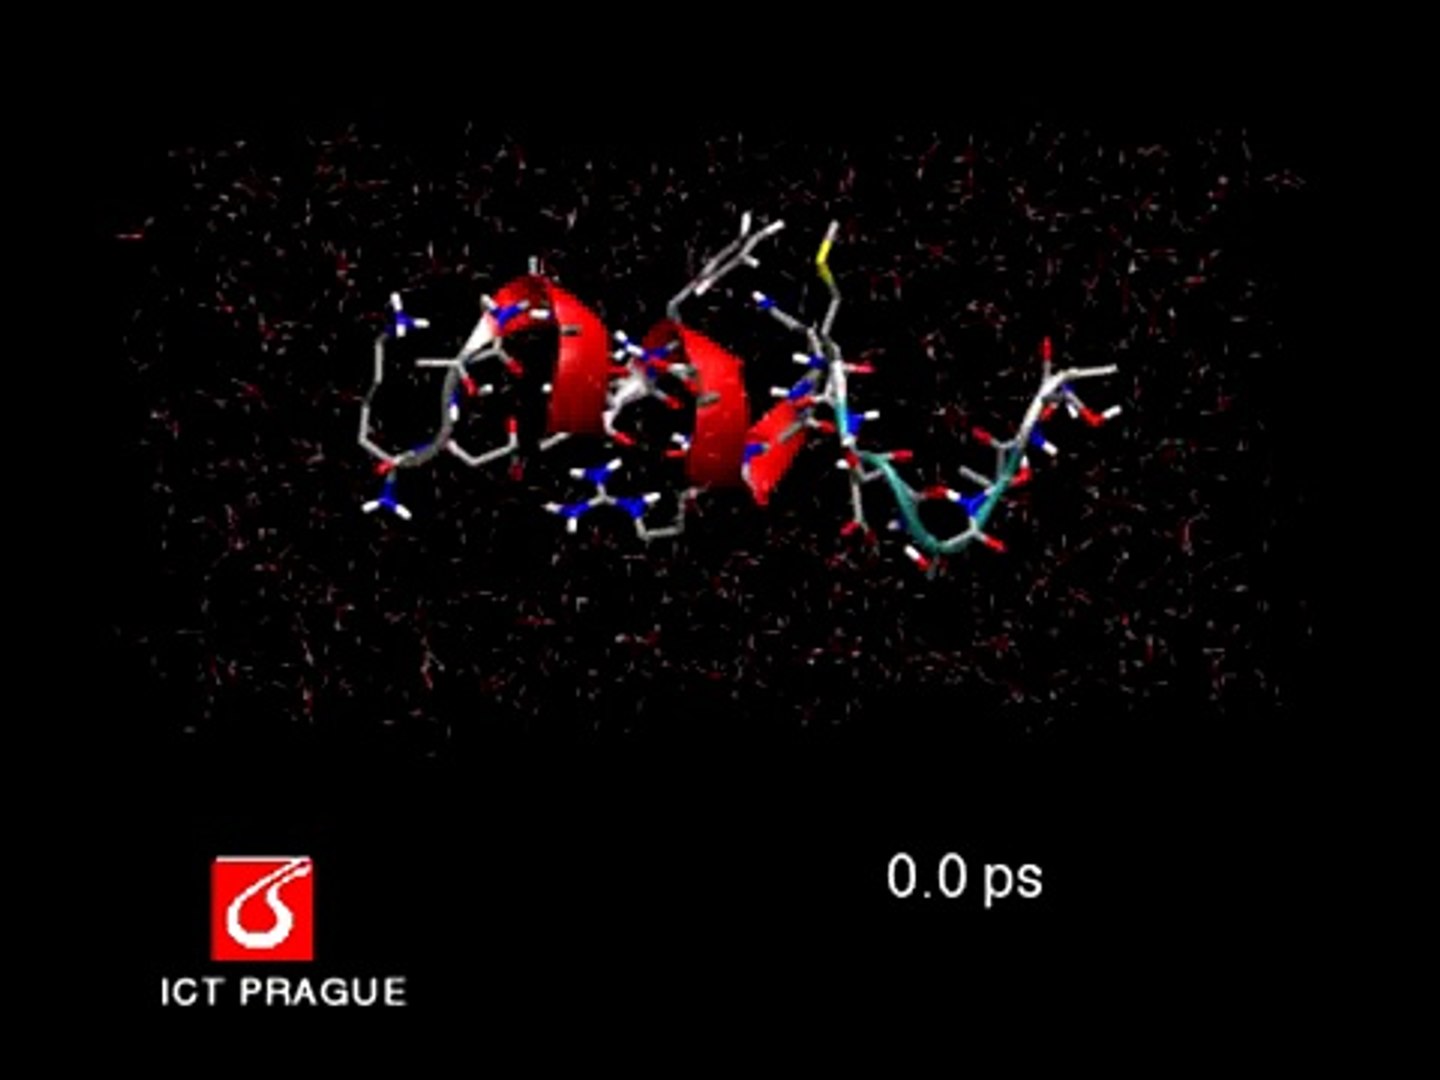 Molecular dynamics simulation